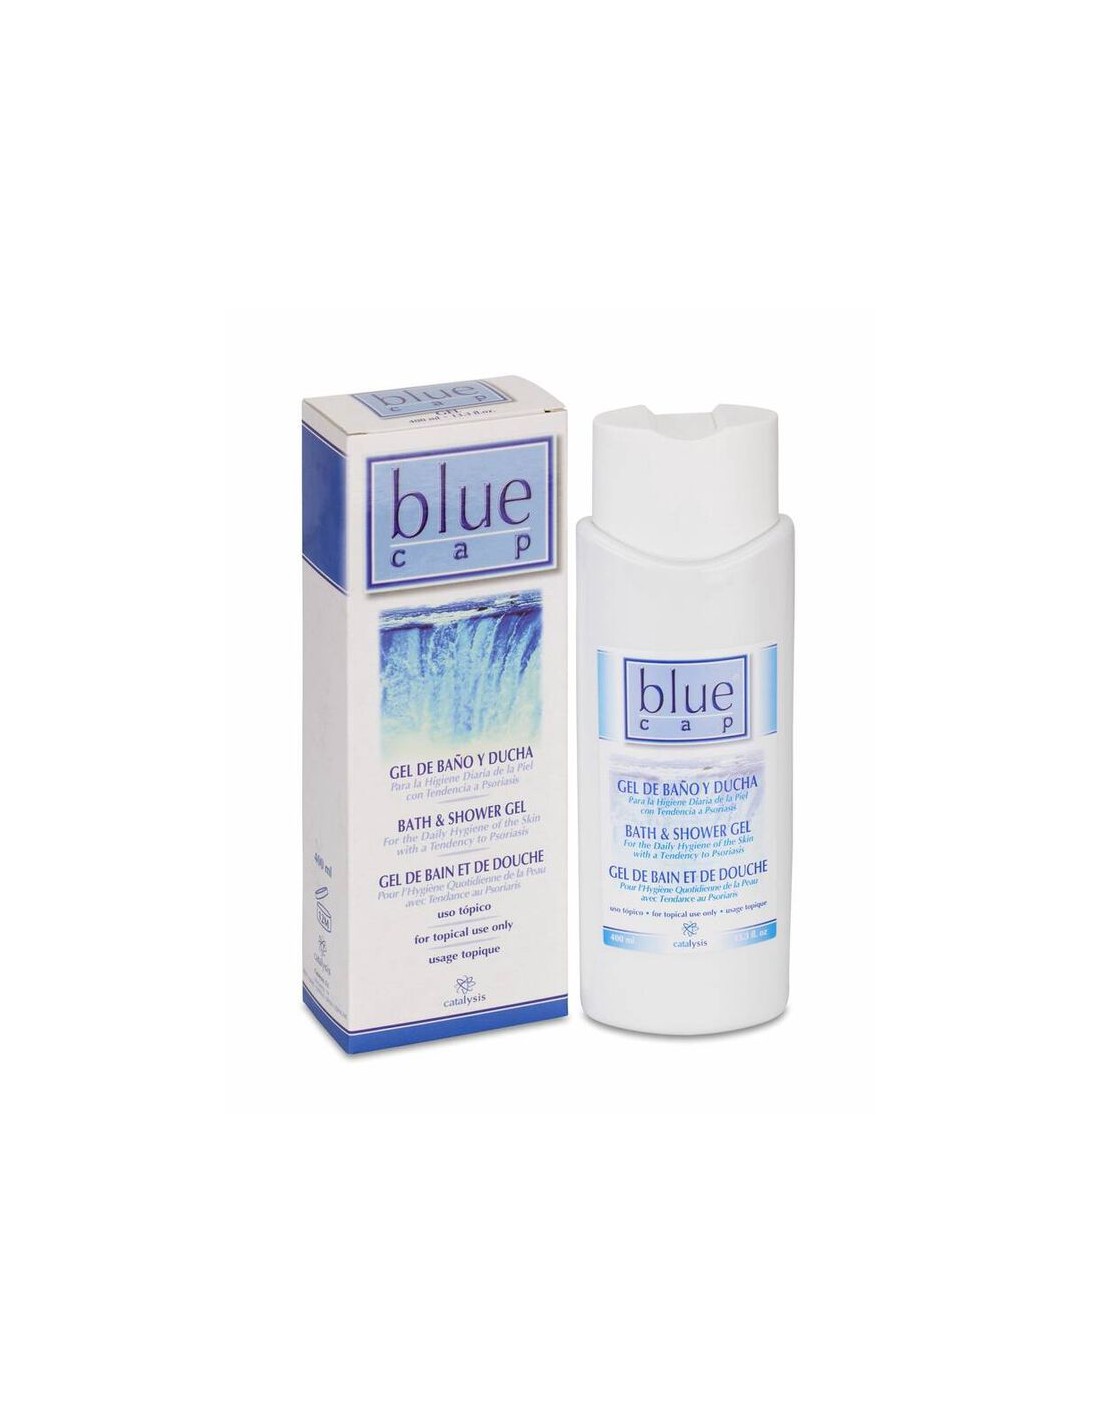 Champu Blue Cap ( Para la piel con tendencia a Psoriasis